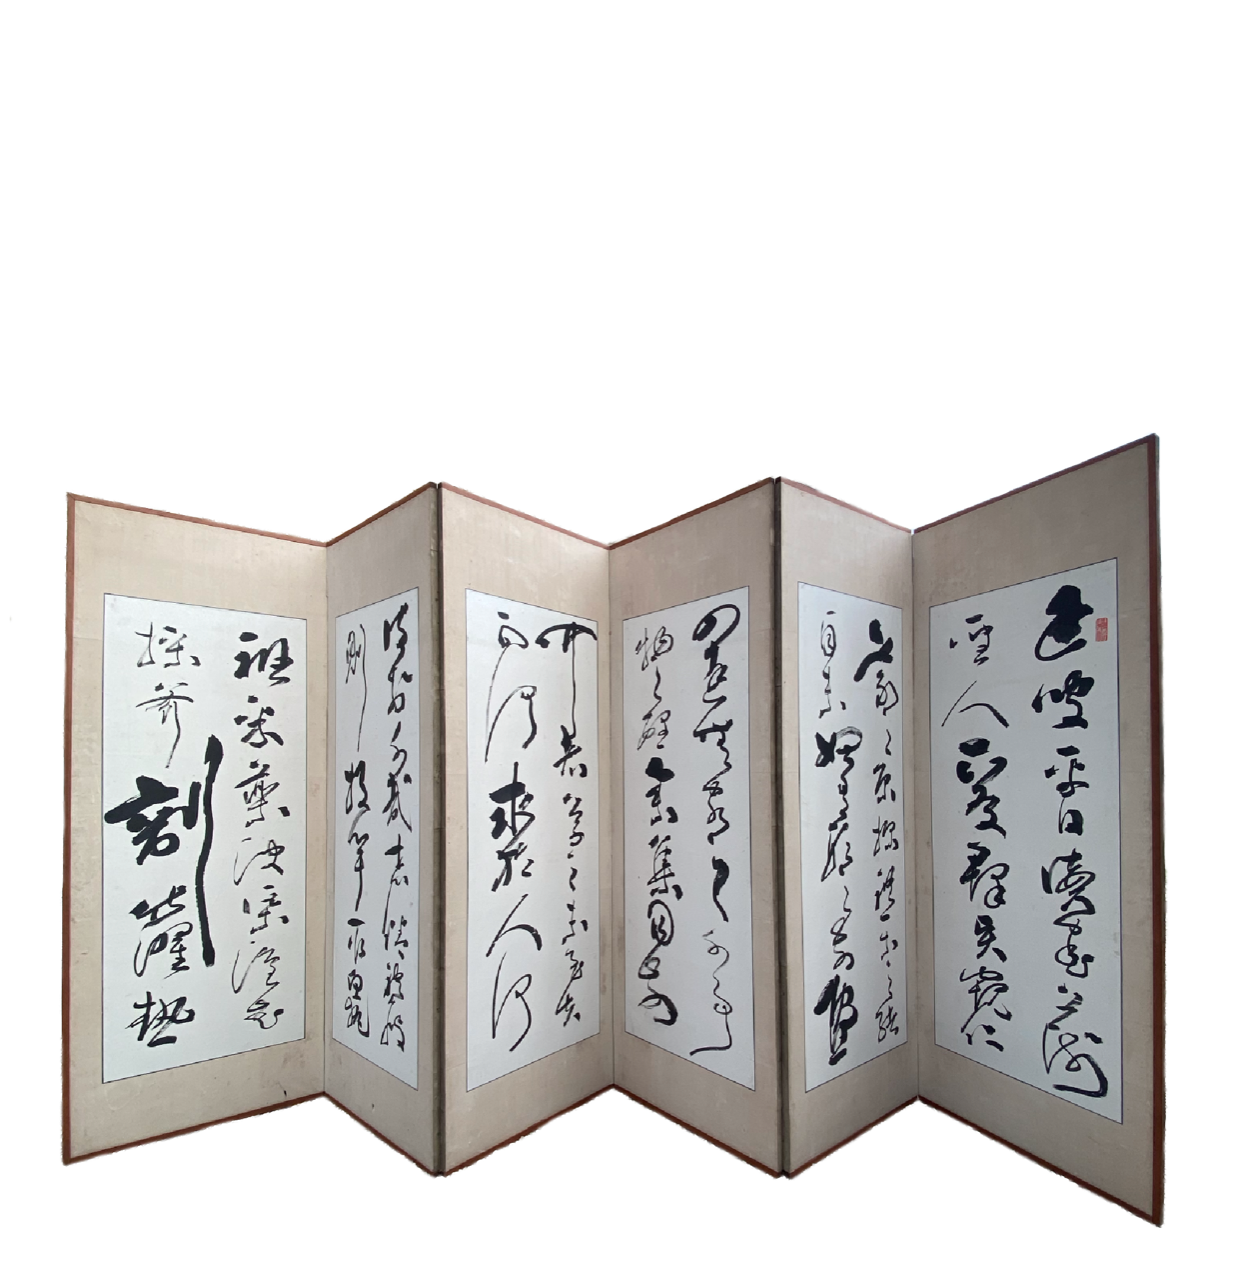 Paire de paravents à 6 feuilles ornés d'une suite de calligraphies  par Takabayashi Nobuyoshi  高林信好 (1819-1897), Japon, 1878,  19ème siècle.